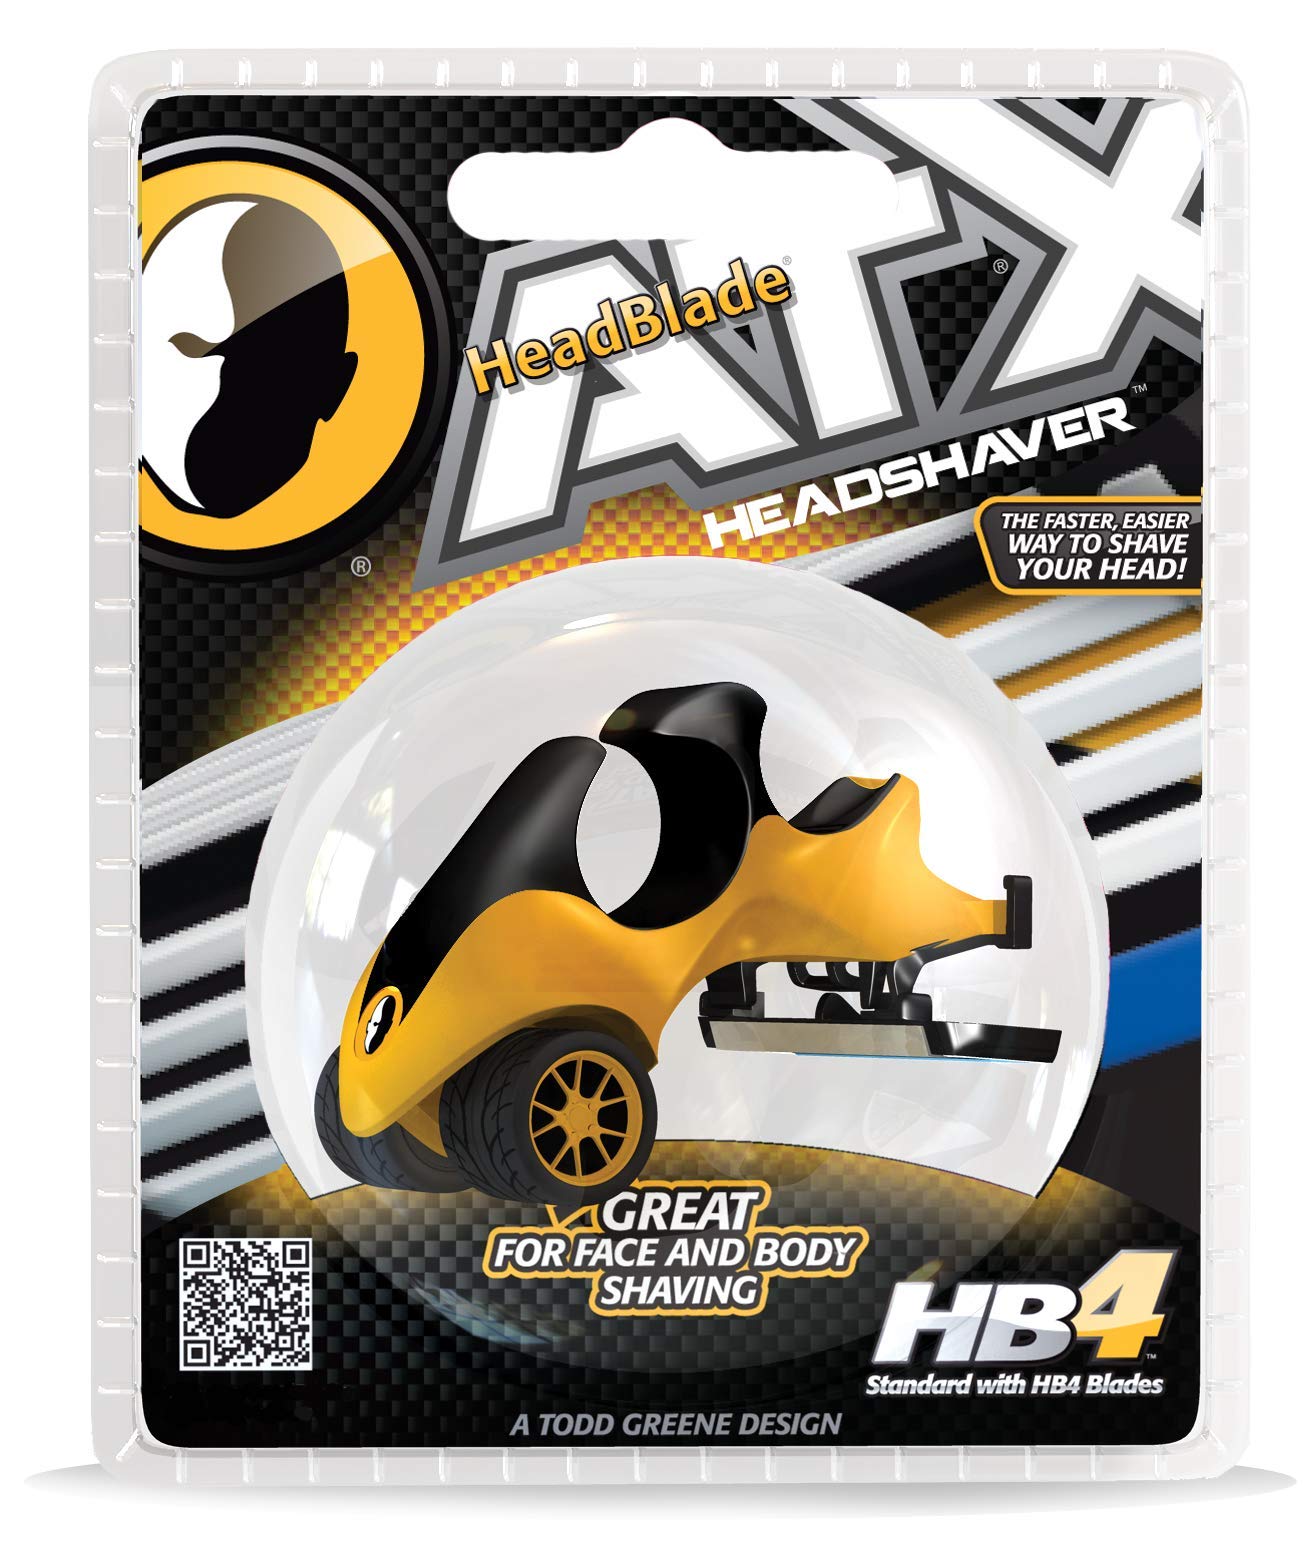 HeadBlade ATX Razor - Original - Rigid Body with Multiblade Design and Non Slip Rubber Ring for Easy Reach, Close Shave